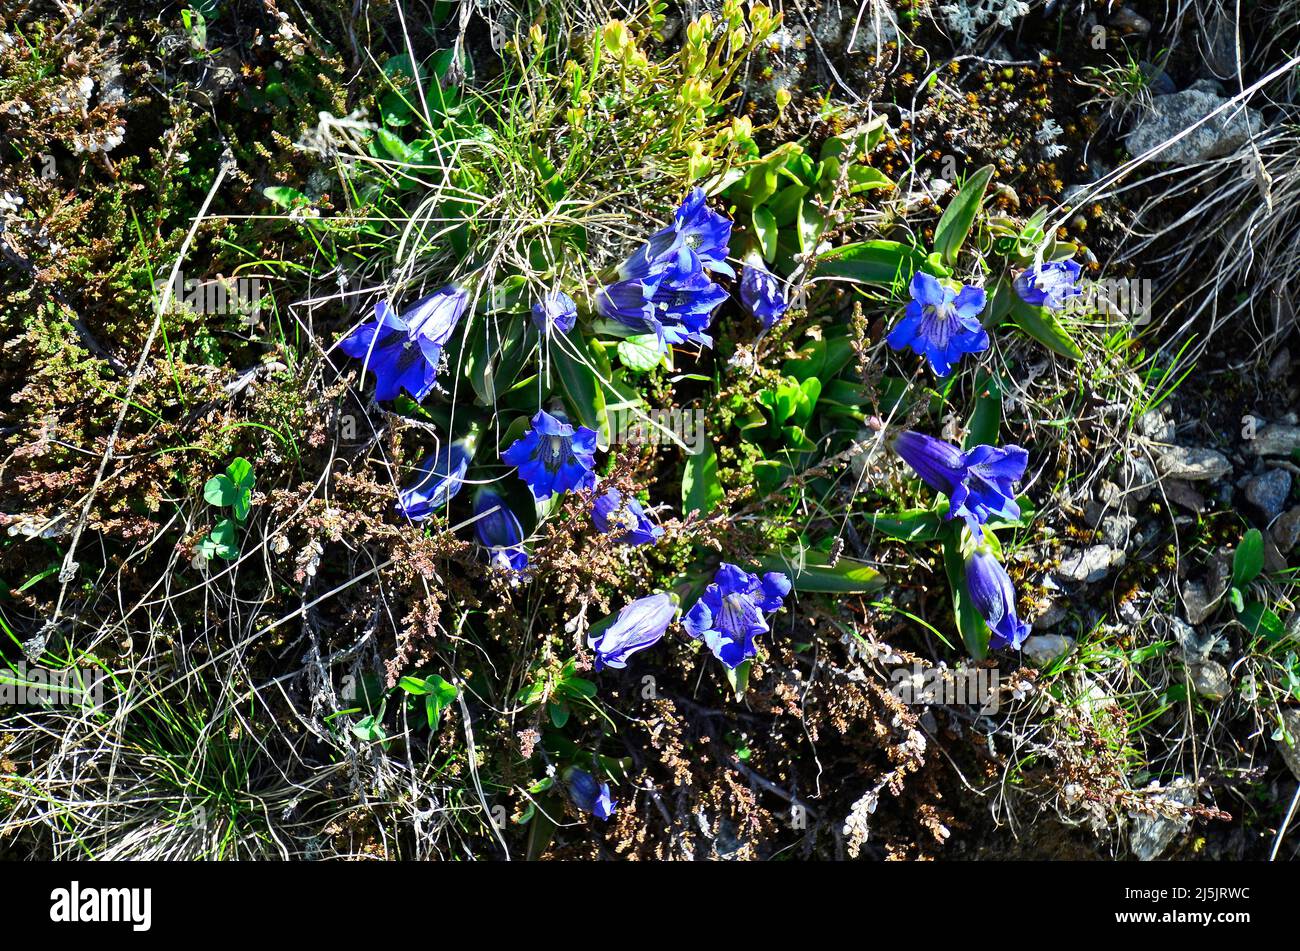 Austria, Tirol, clusius gentian flowers Stock Photo